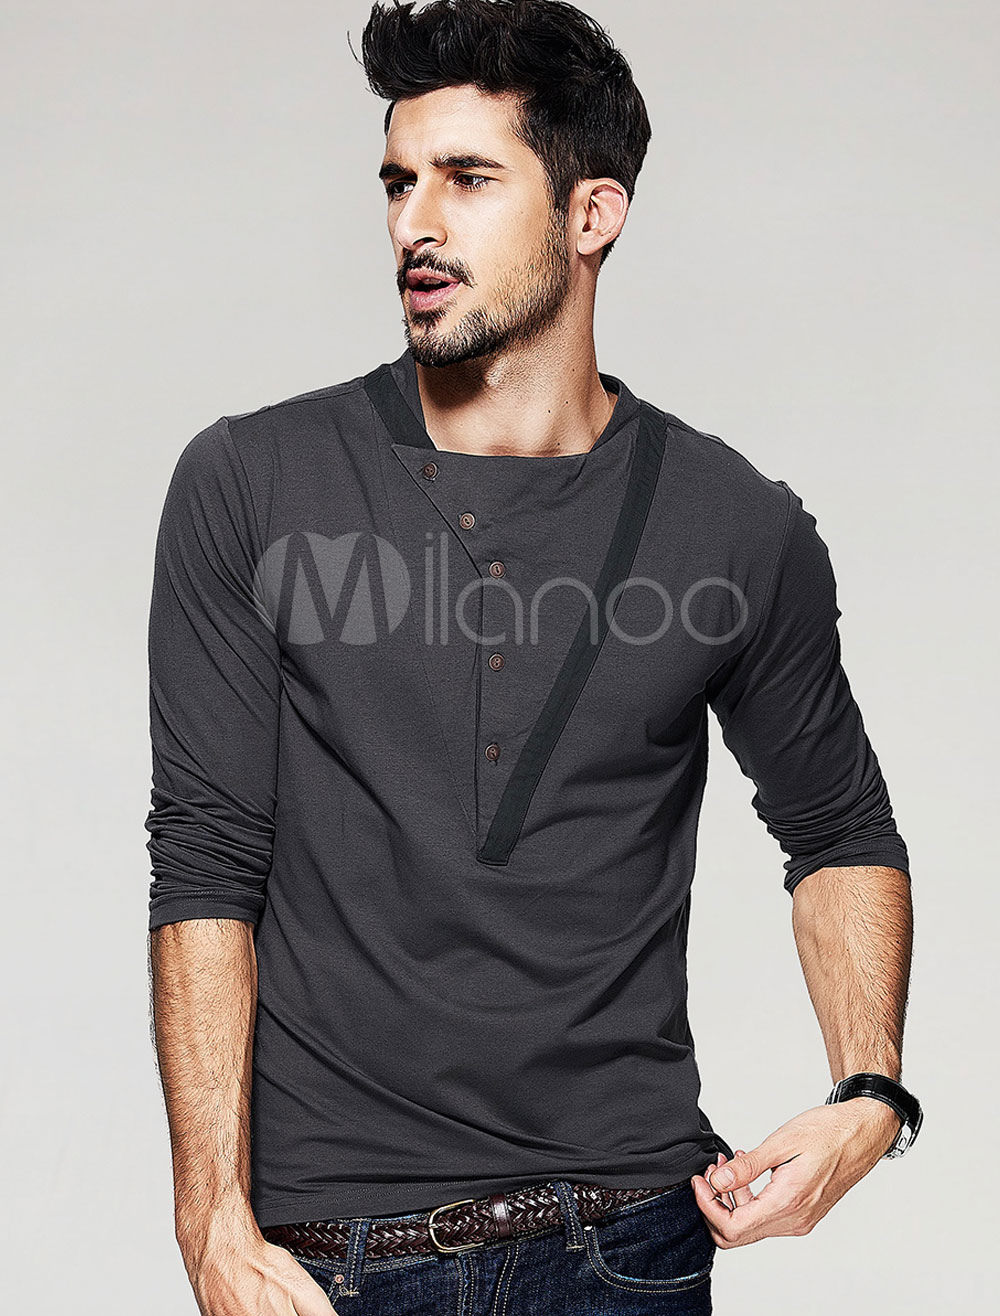 Gray T Shirt Long Sleeve Men's Button Cotton Top - Milanoo.com